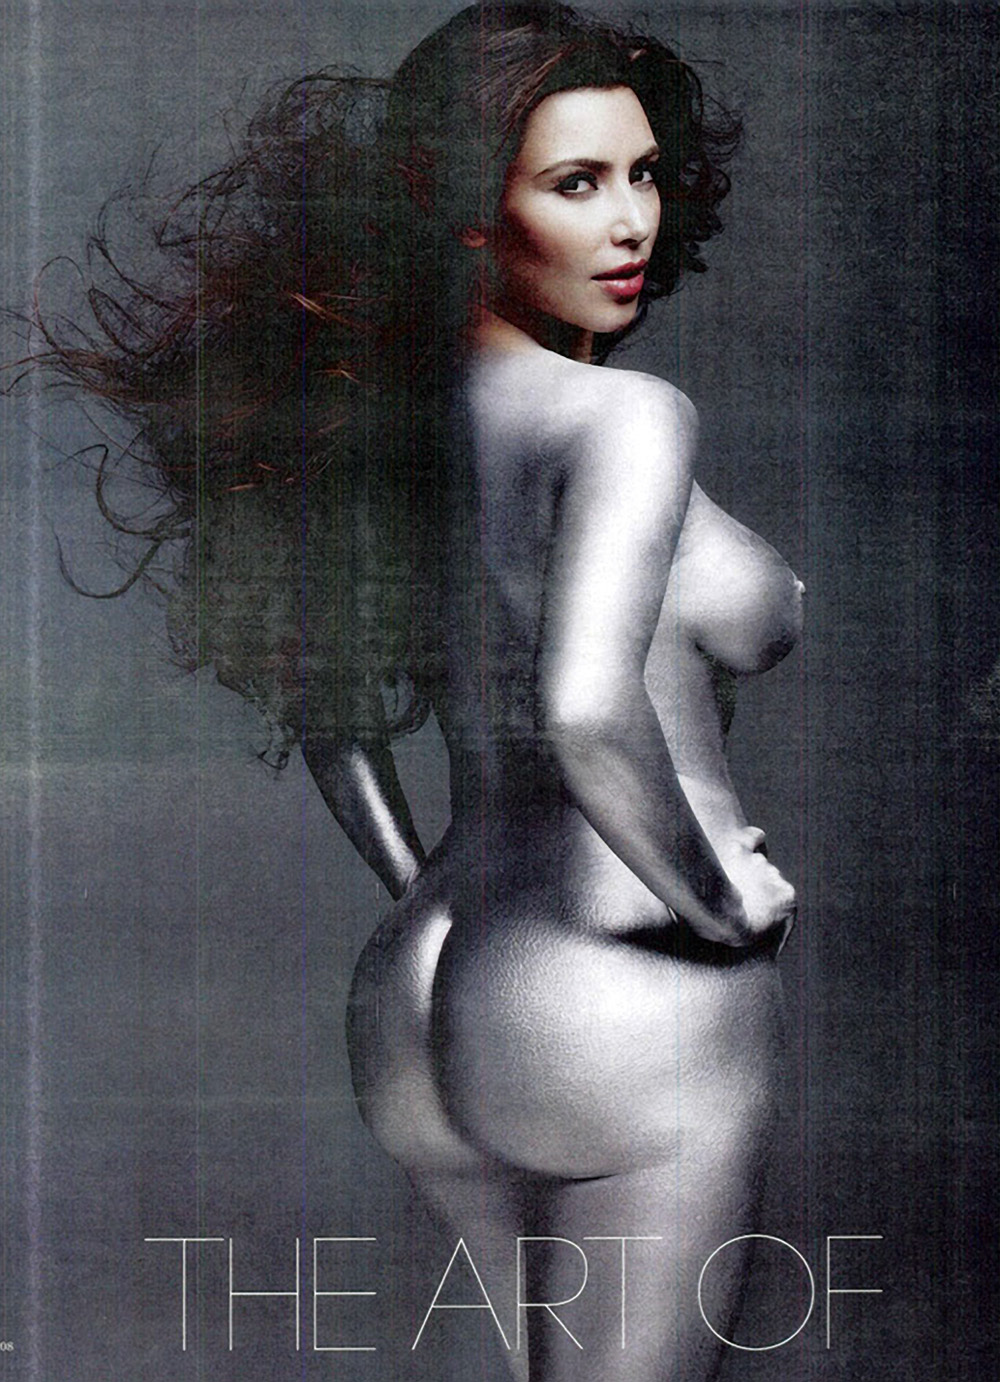 Kim Kardashian nago w magazynie W